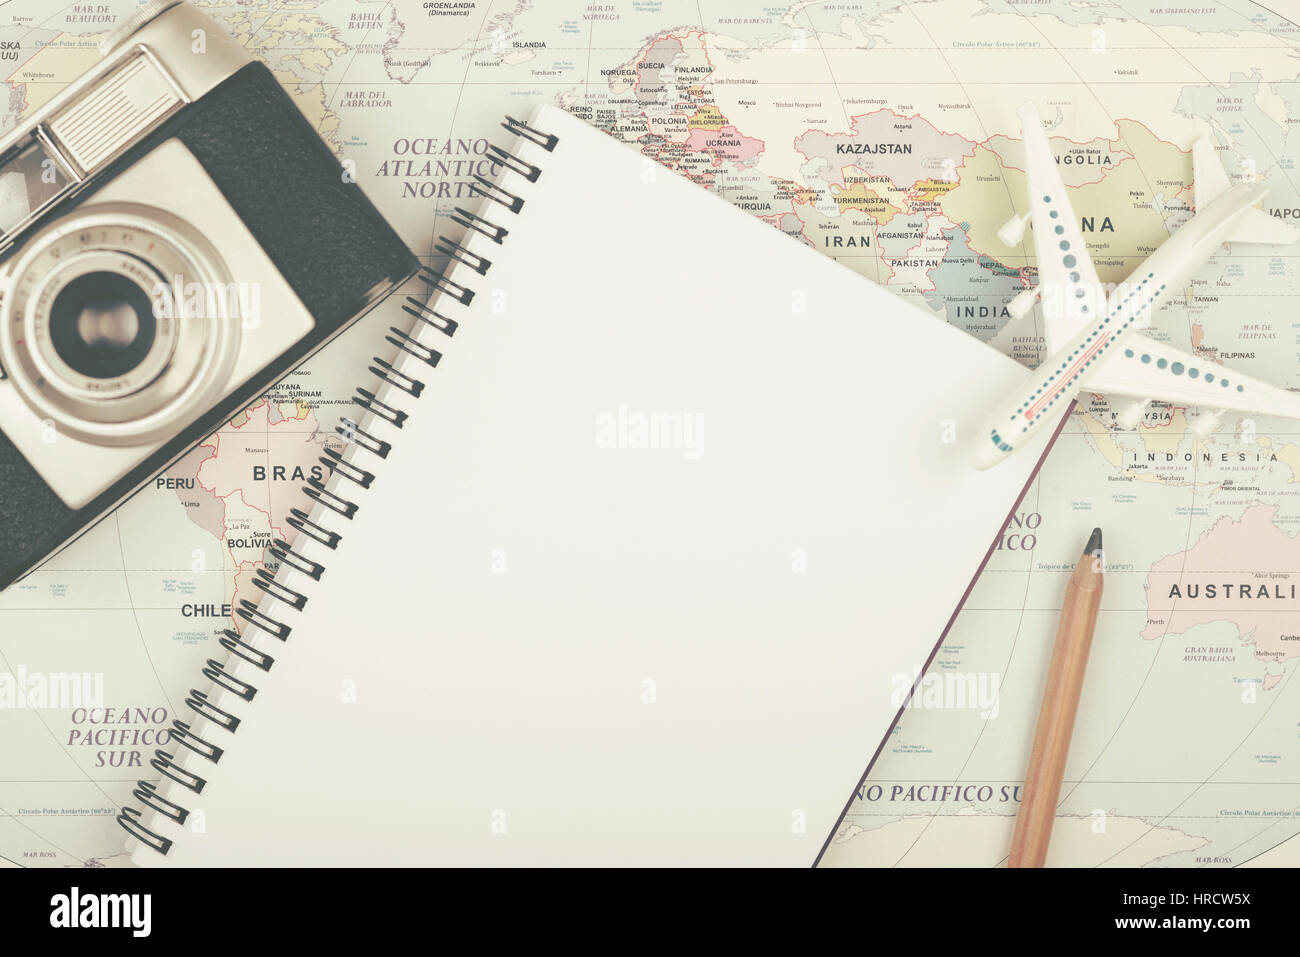 Urlaubsplanung - Planung Urlaub Urlaub mit Karte und Flugzeug Stockfoto